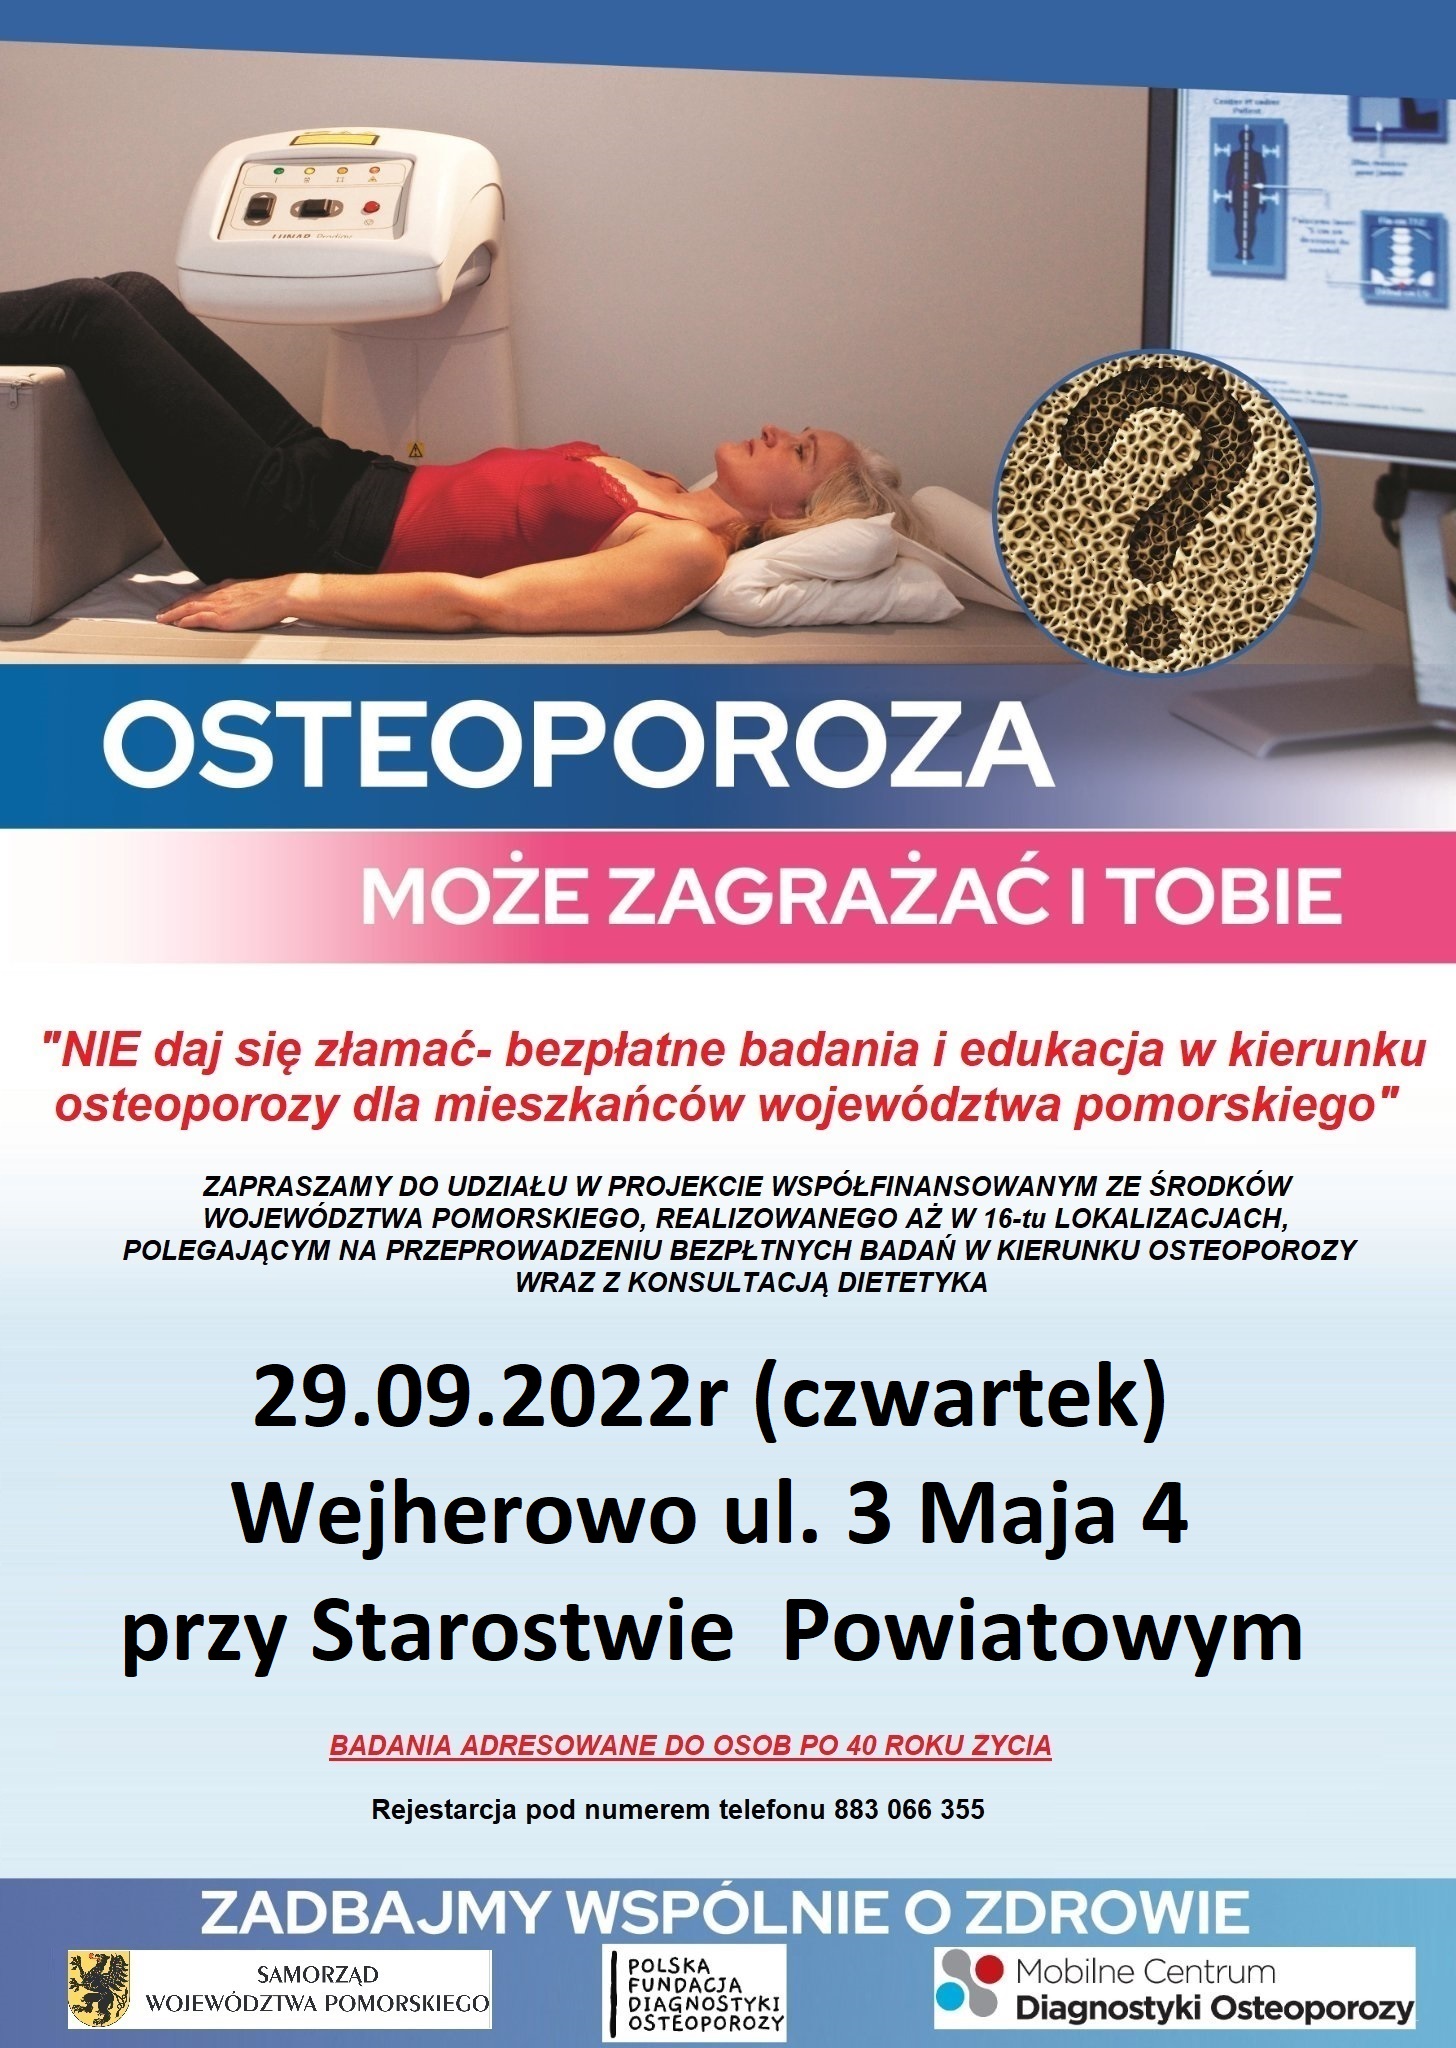 Osteoporoza - bezpłatne badania i edukacja